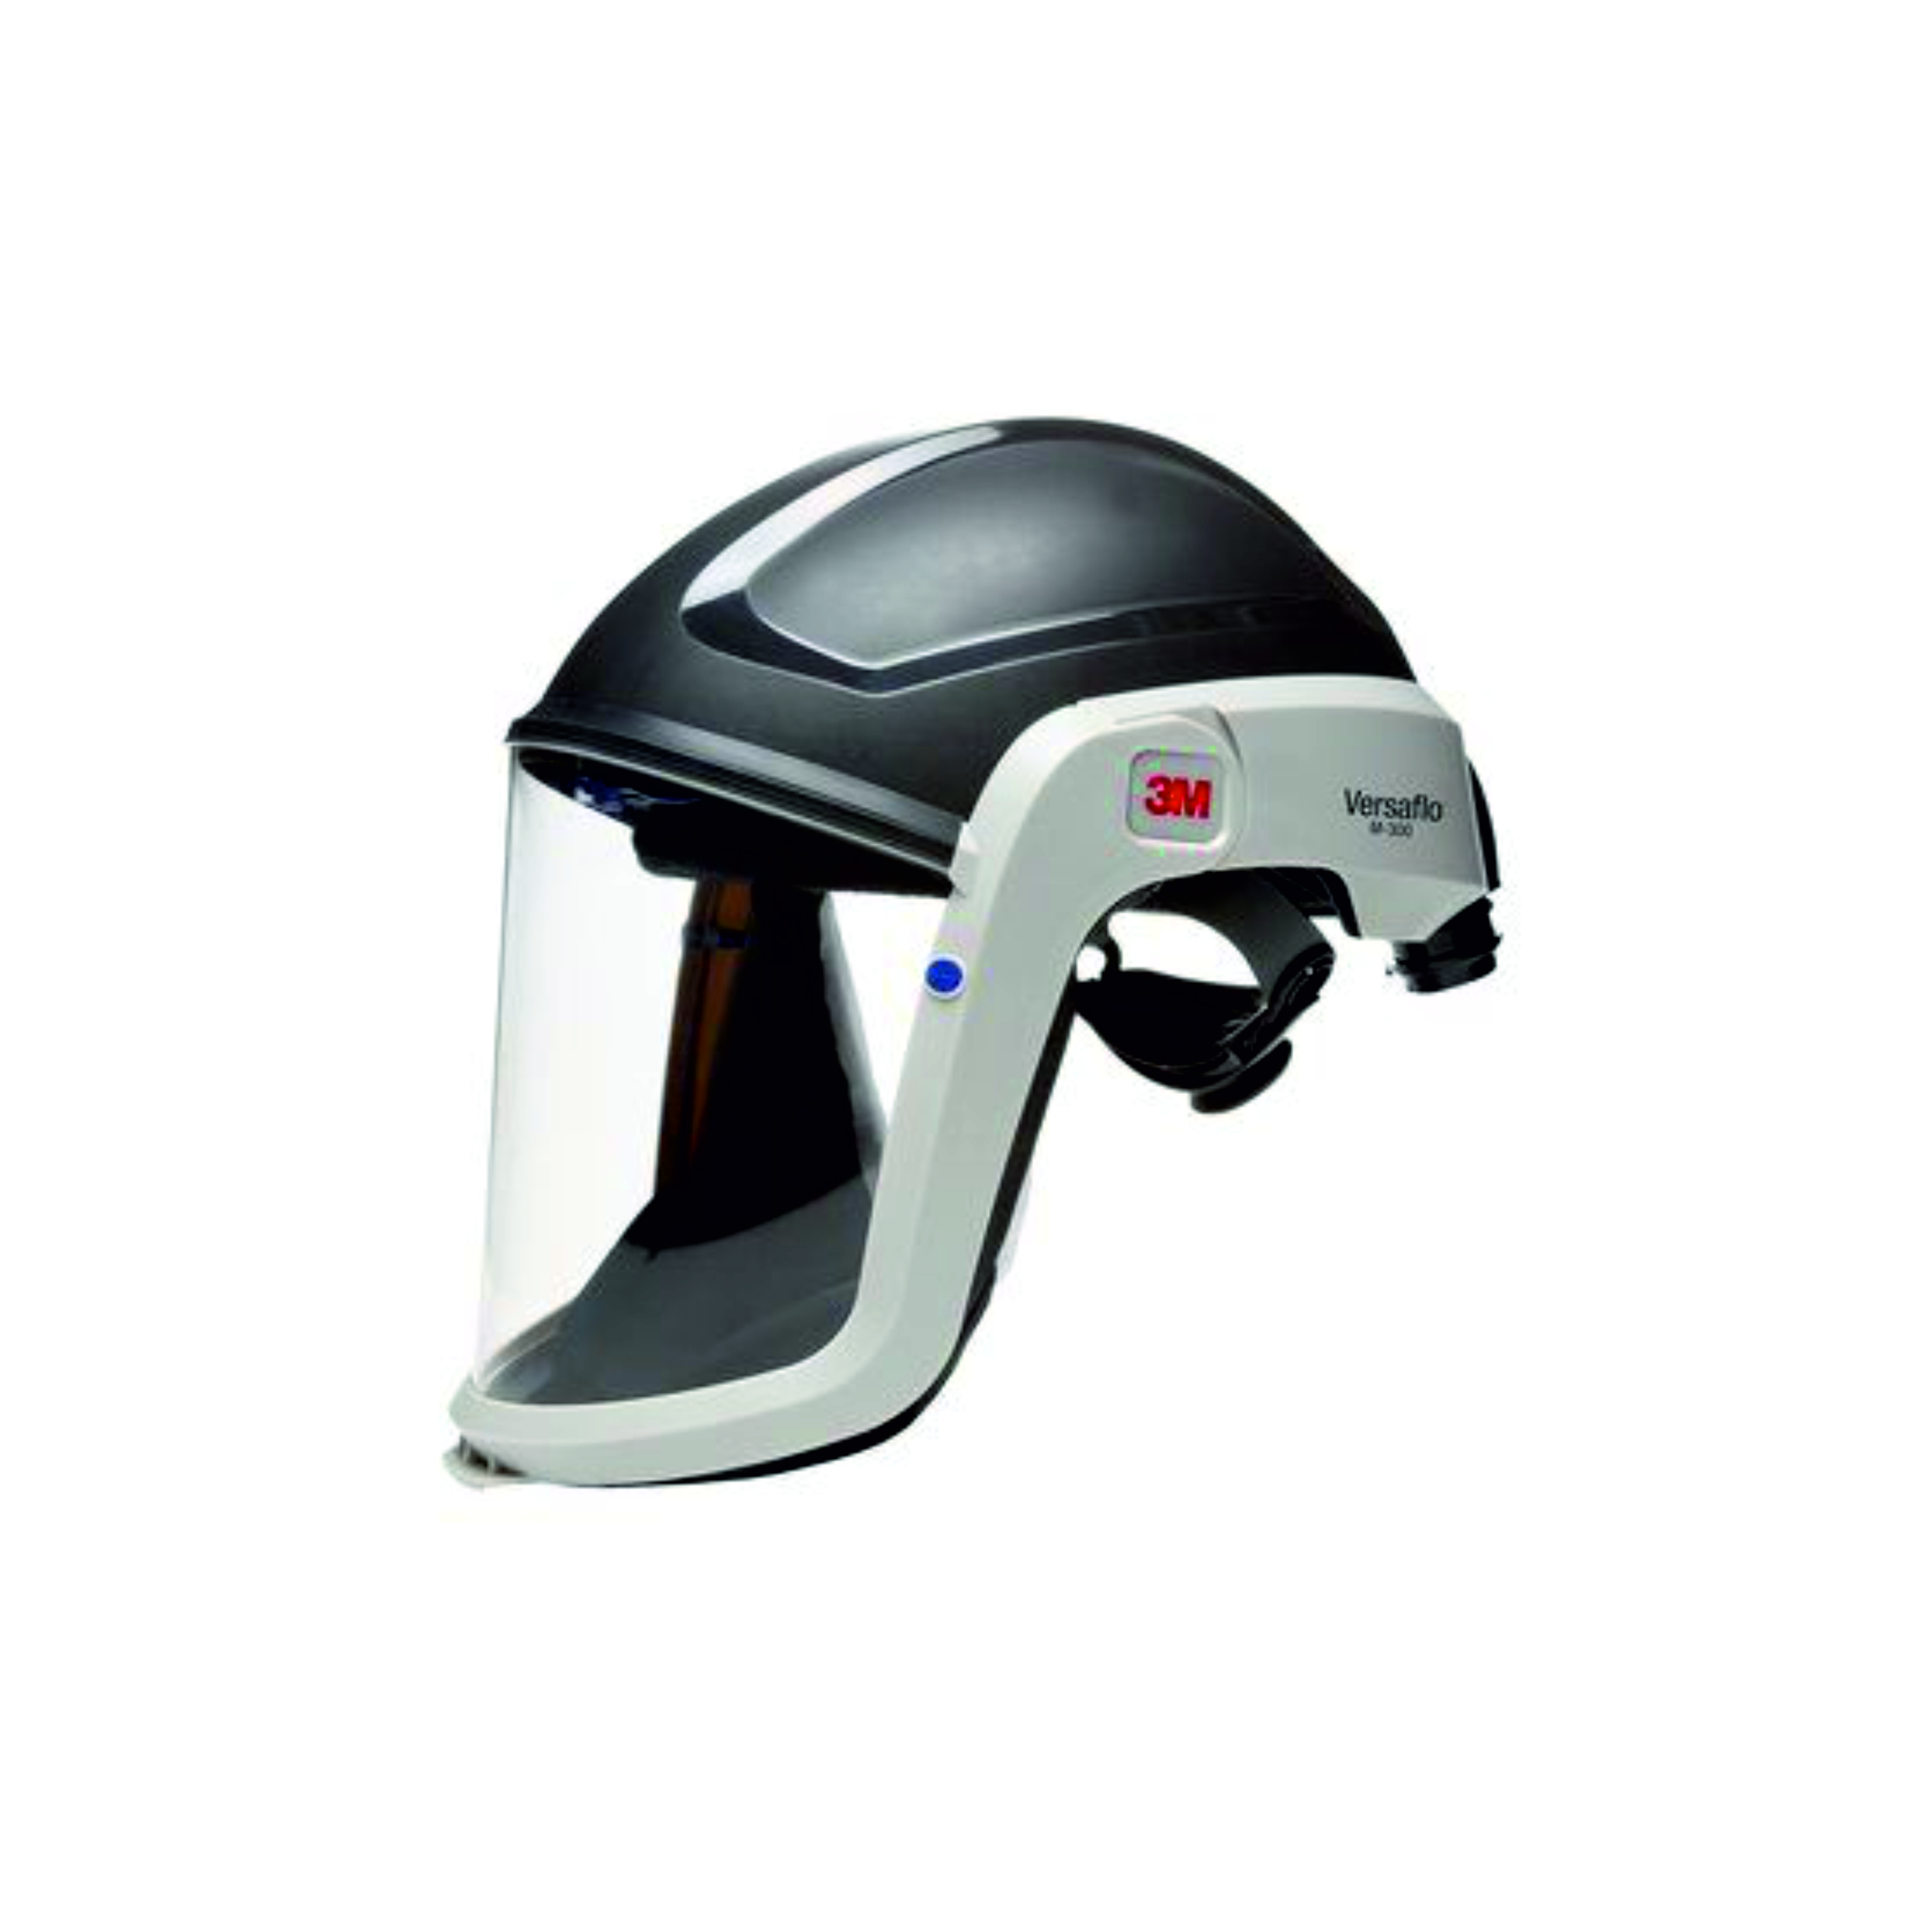 Шлем защитный товарный знак 3М Versaflo серии М-300 модель М-306